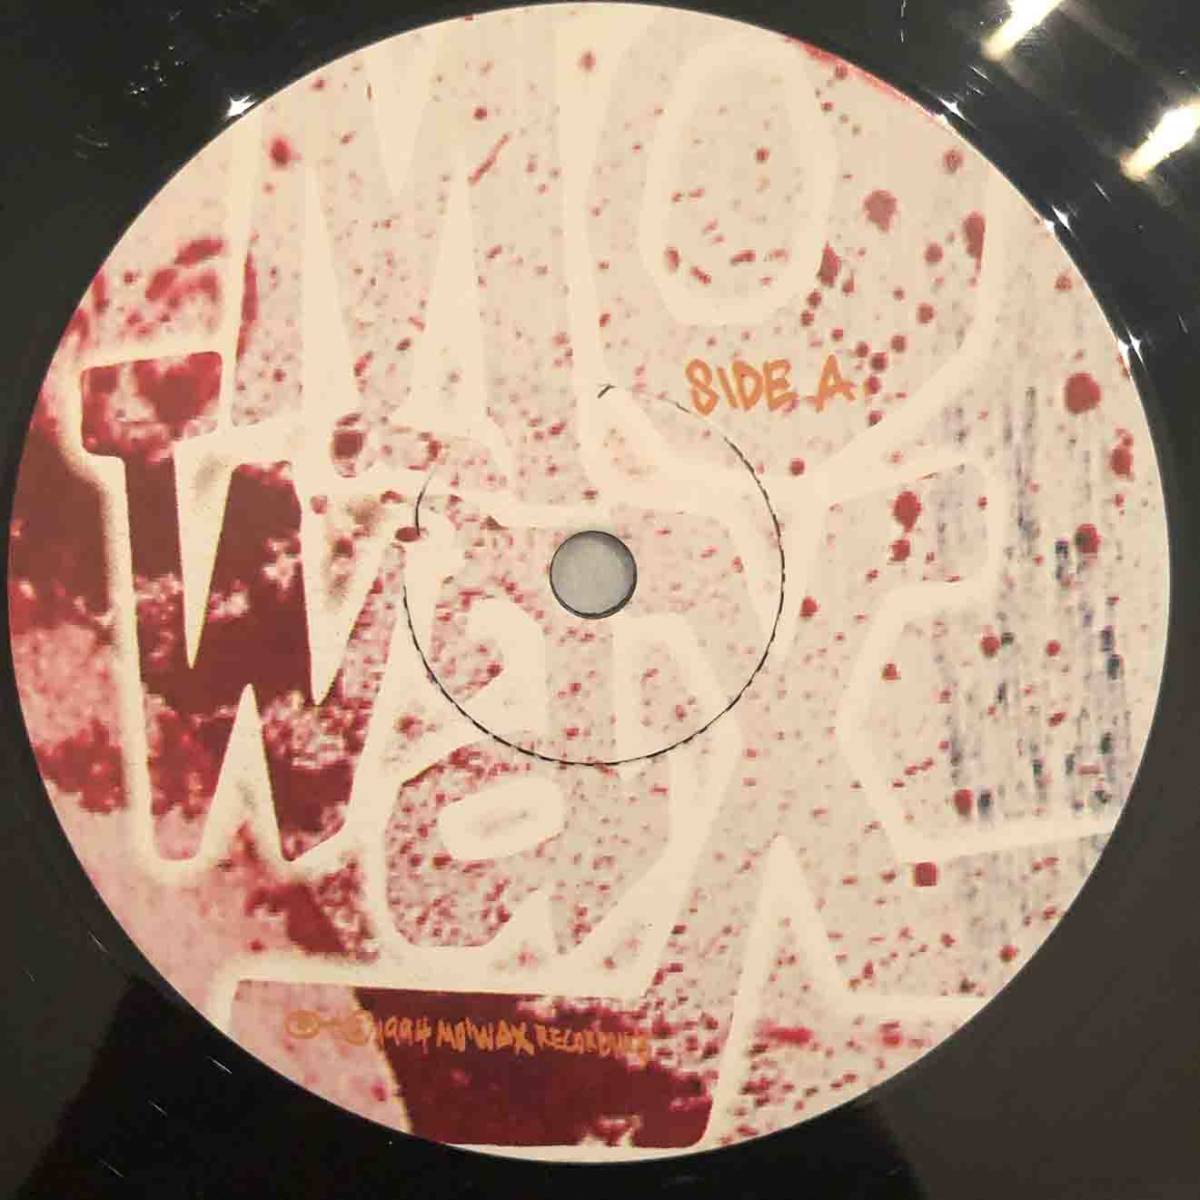 ■1994年 UK盤 オリジナル U.N.K.L.E. - The Time Has Come E.P. 2枚組 12”EP MW 028 Mo Wax_画像3